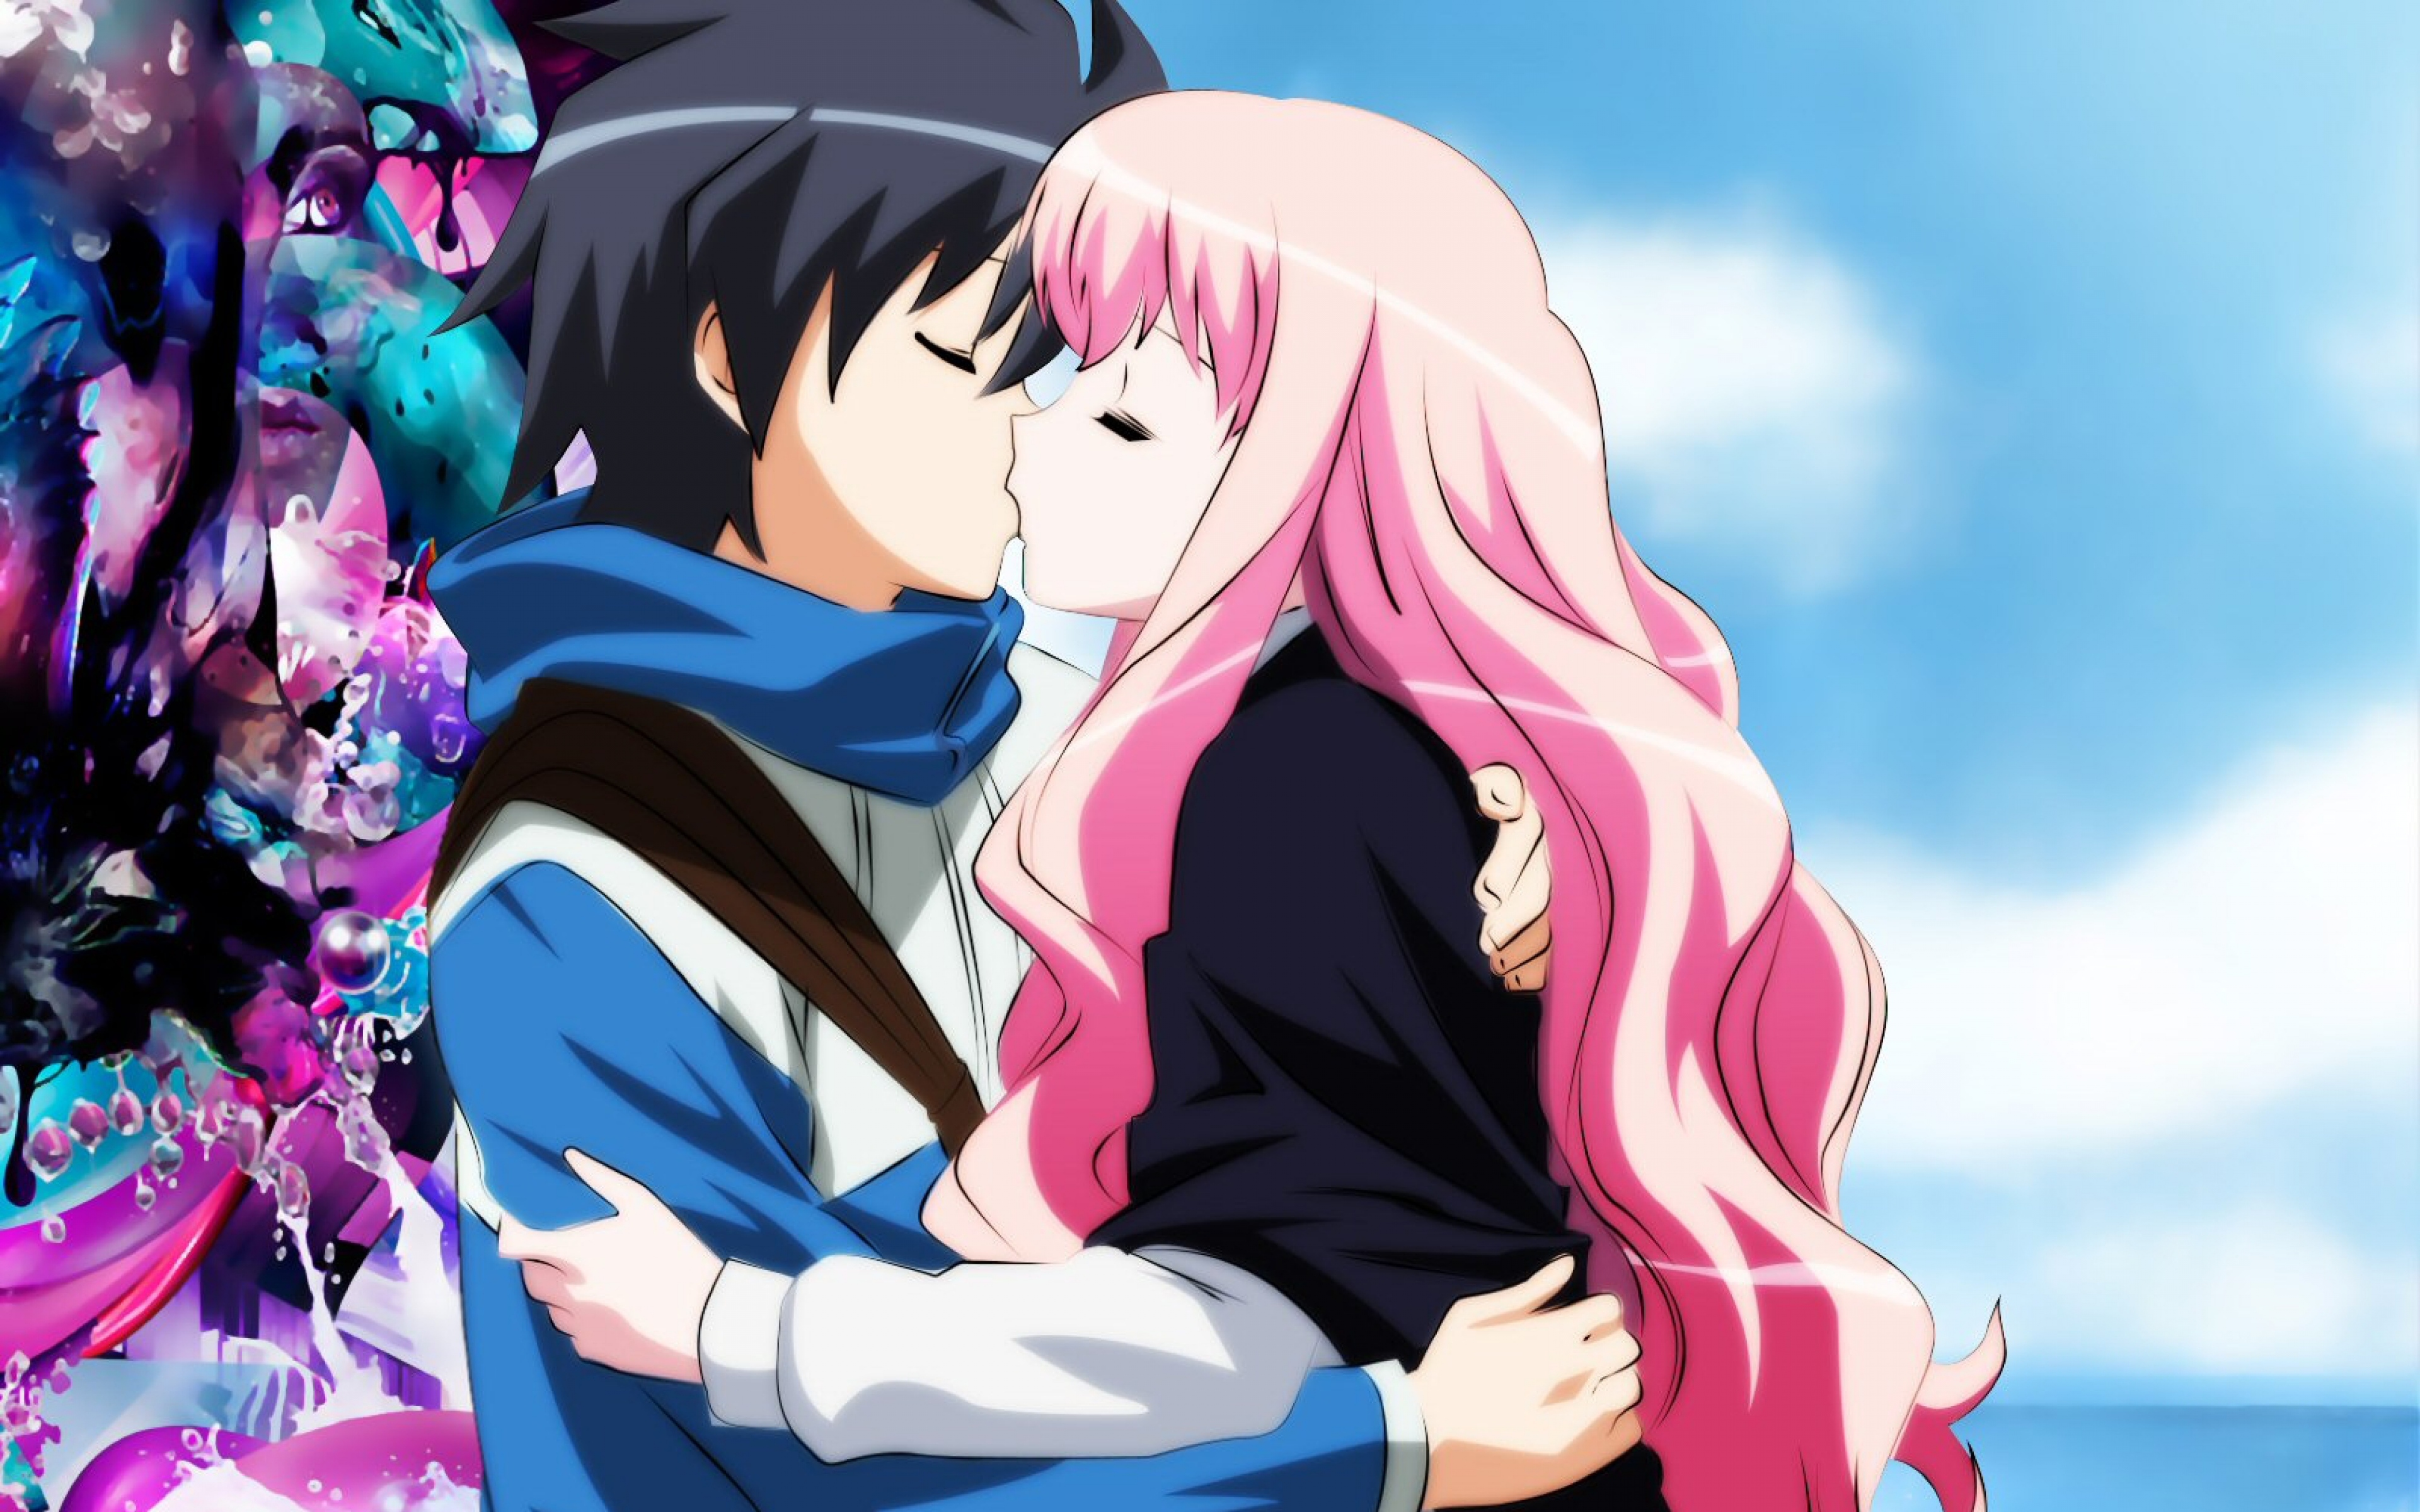 Boy, Girl, Kiss - Anime Girl And Boy Kiss - HD Wallpaper 